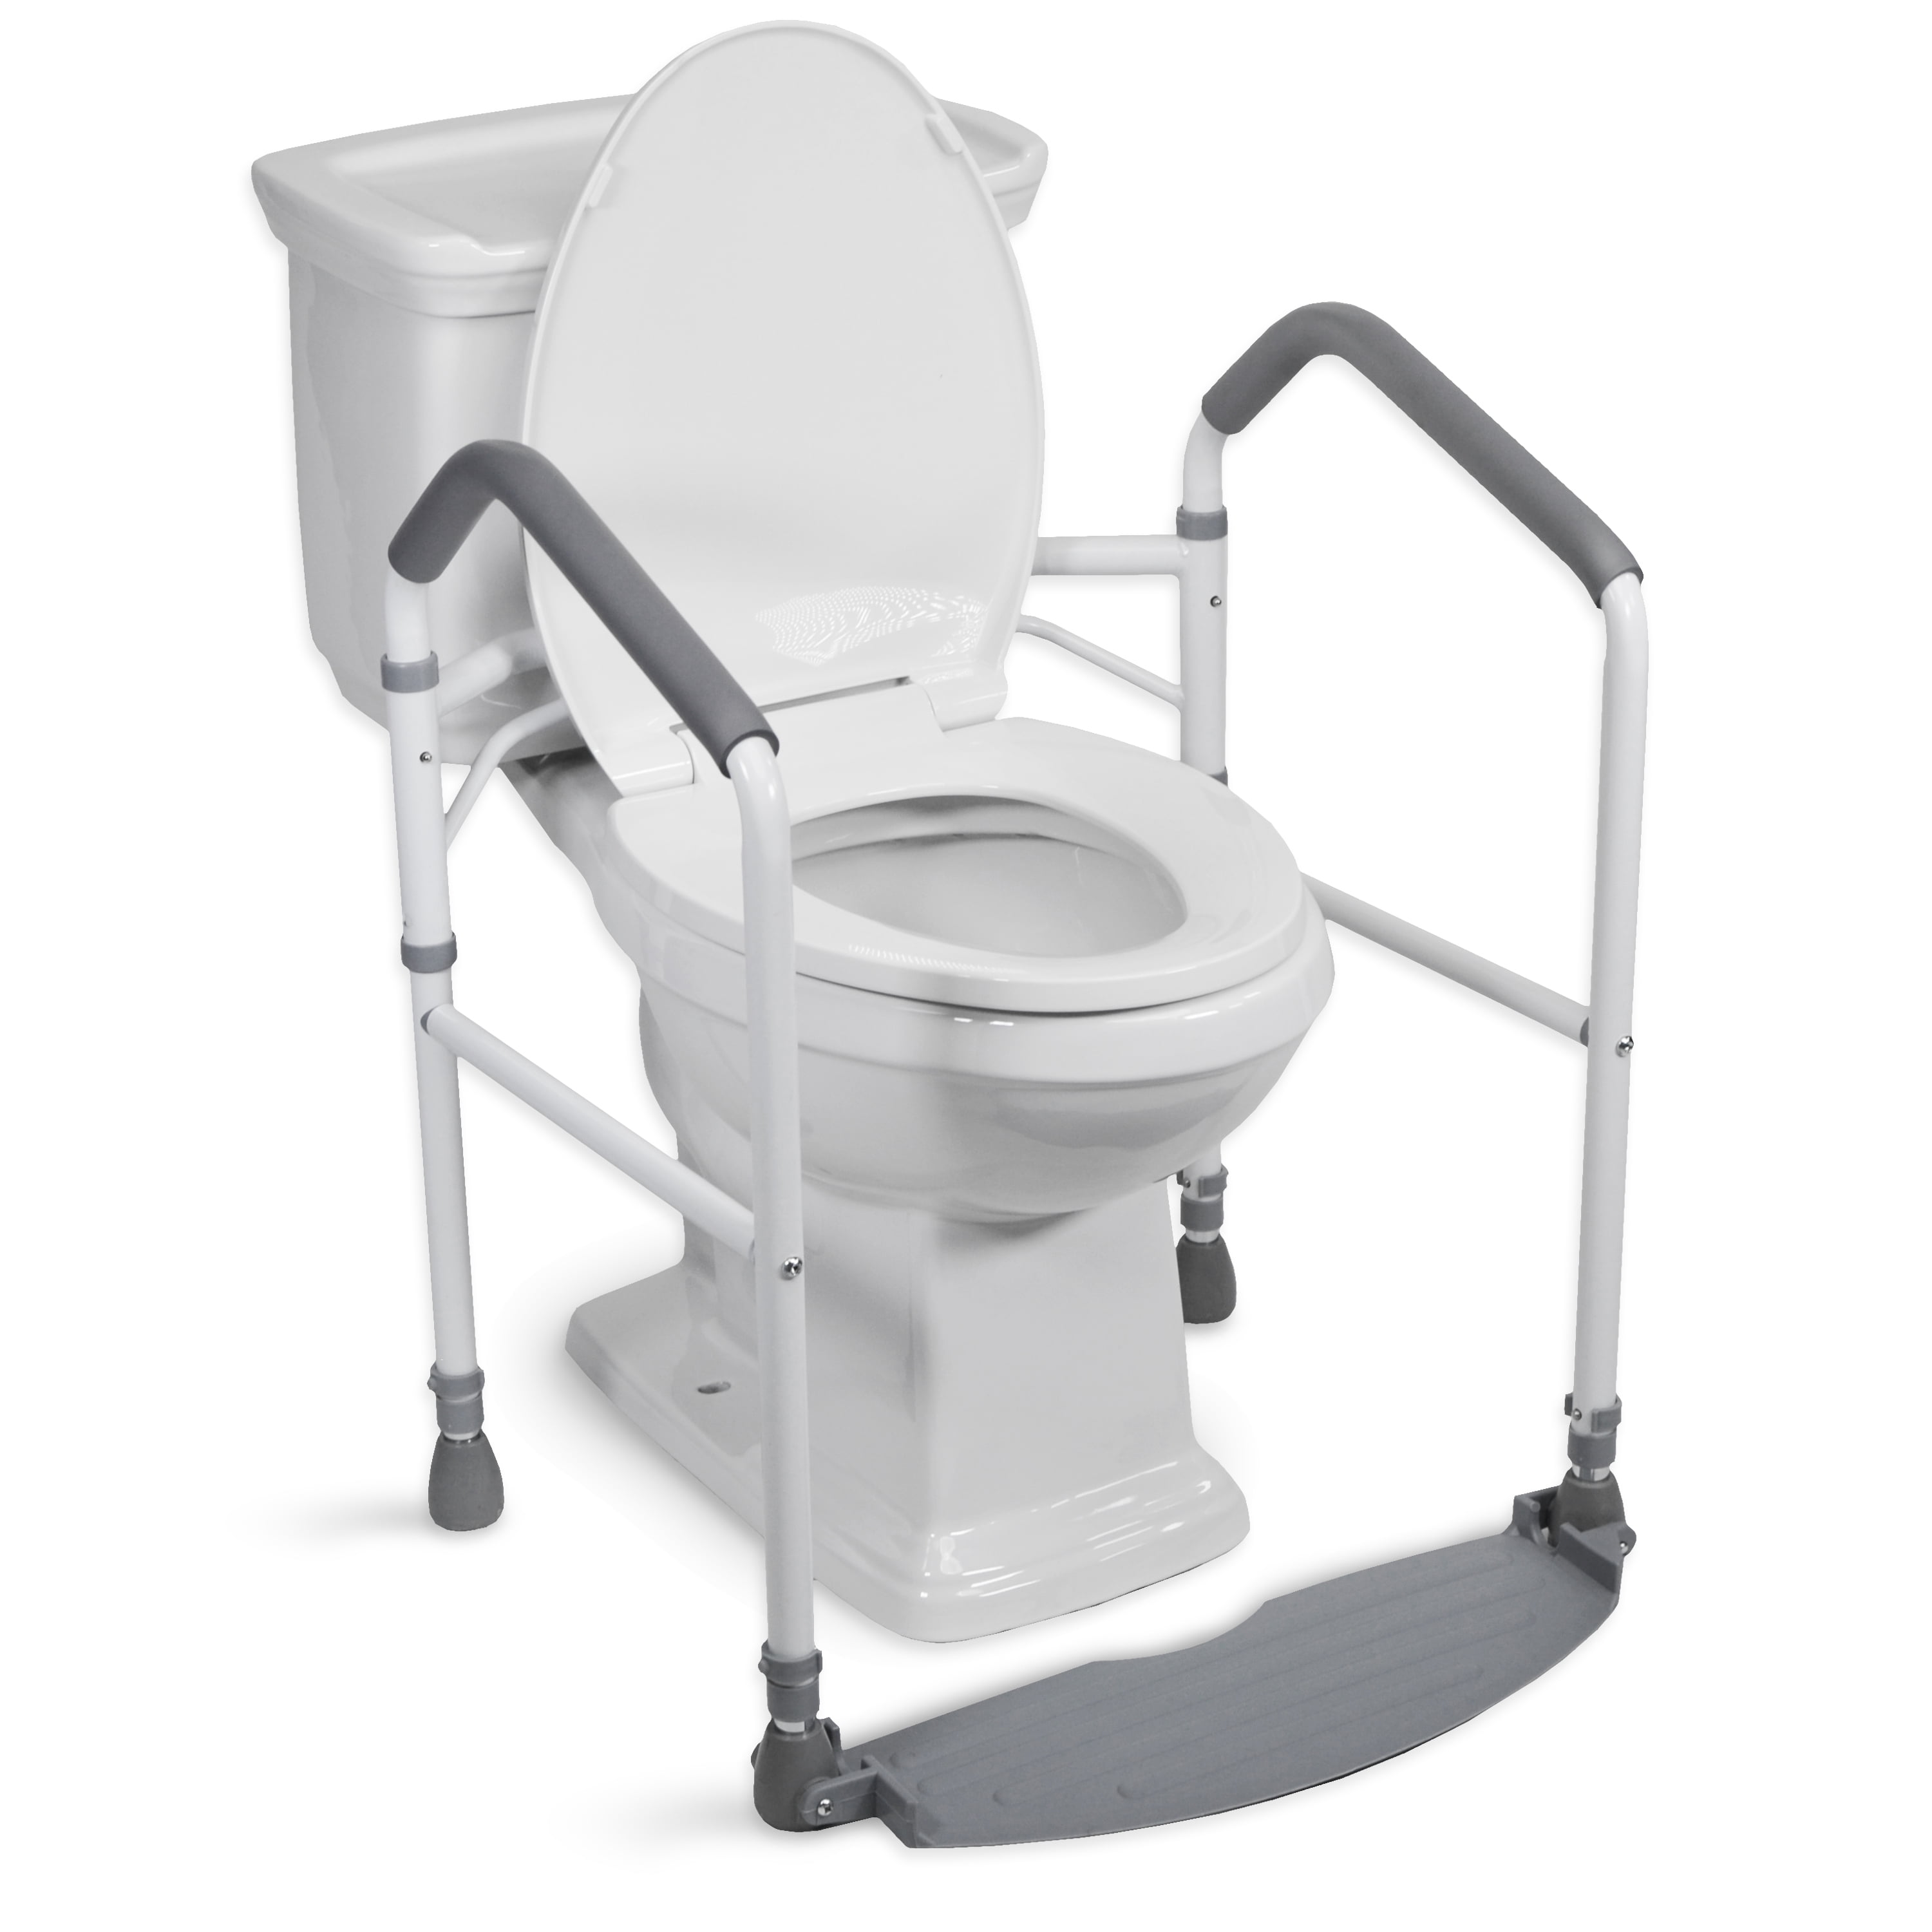 Toilet Safety Frame & Rail - Folding & Portable Bathroom Toilet Safety